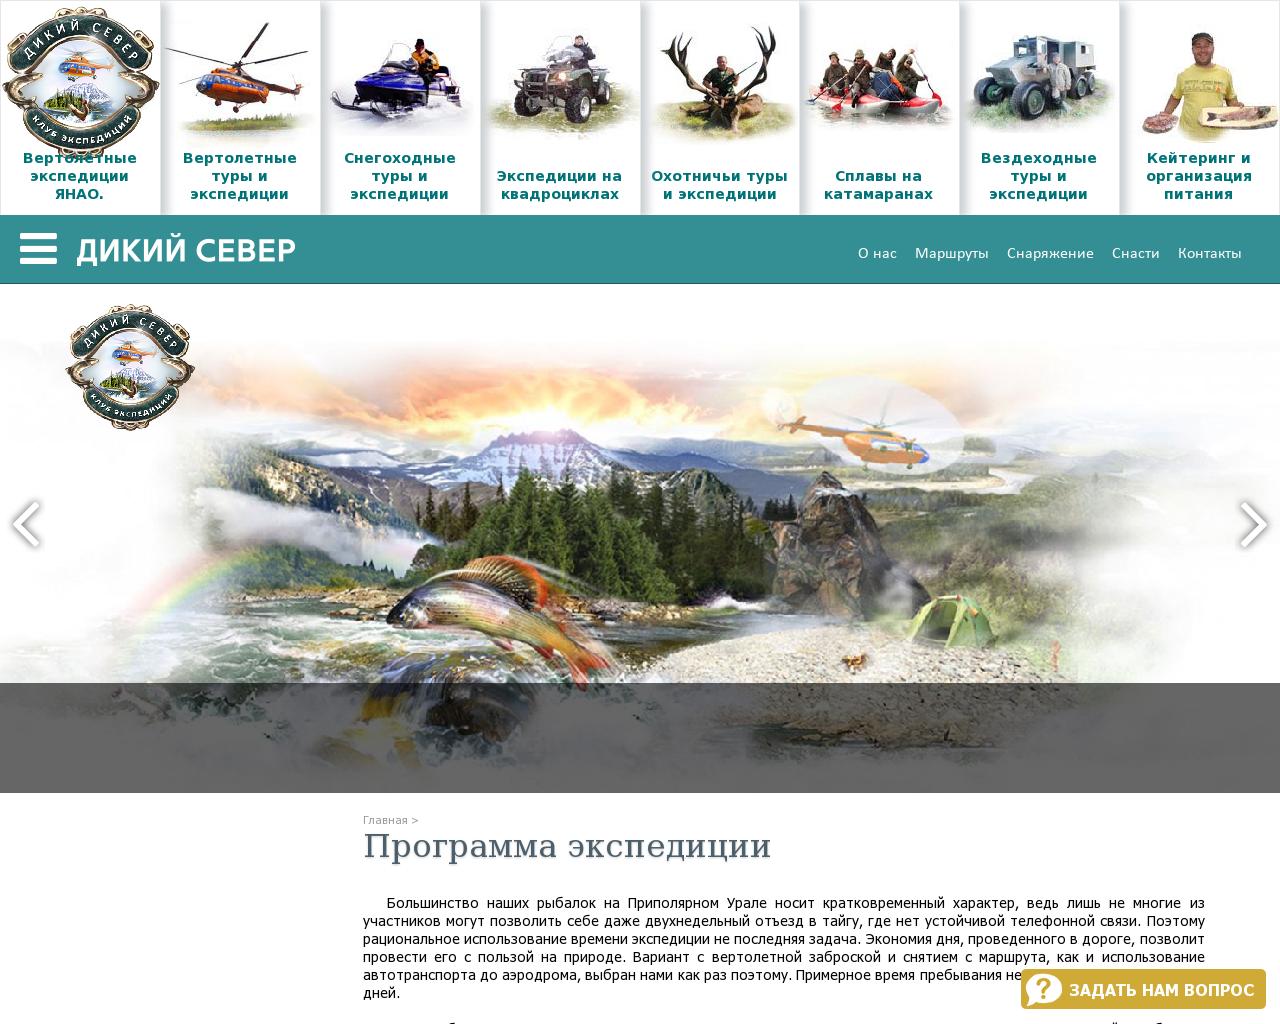 Изображение сайта tour-rf.ru в разрешении 1280x1024